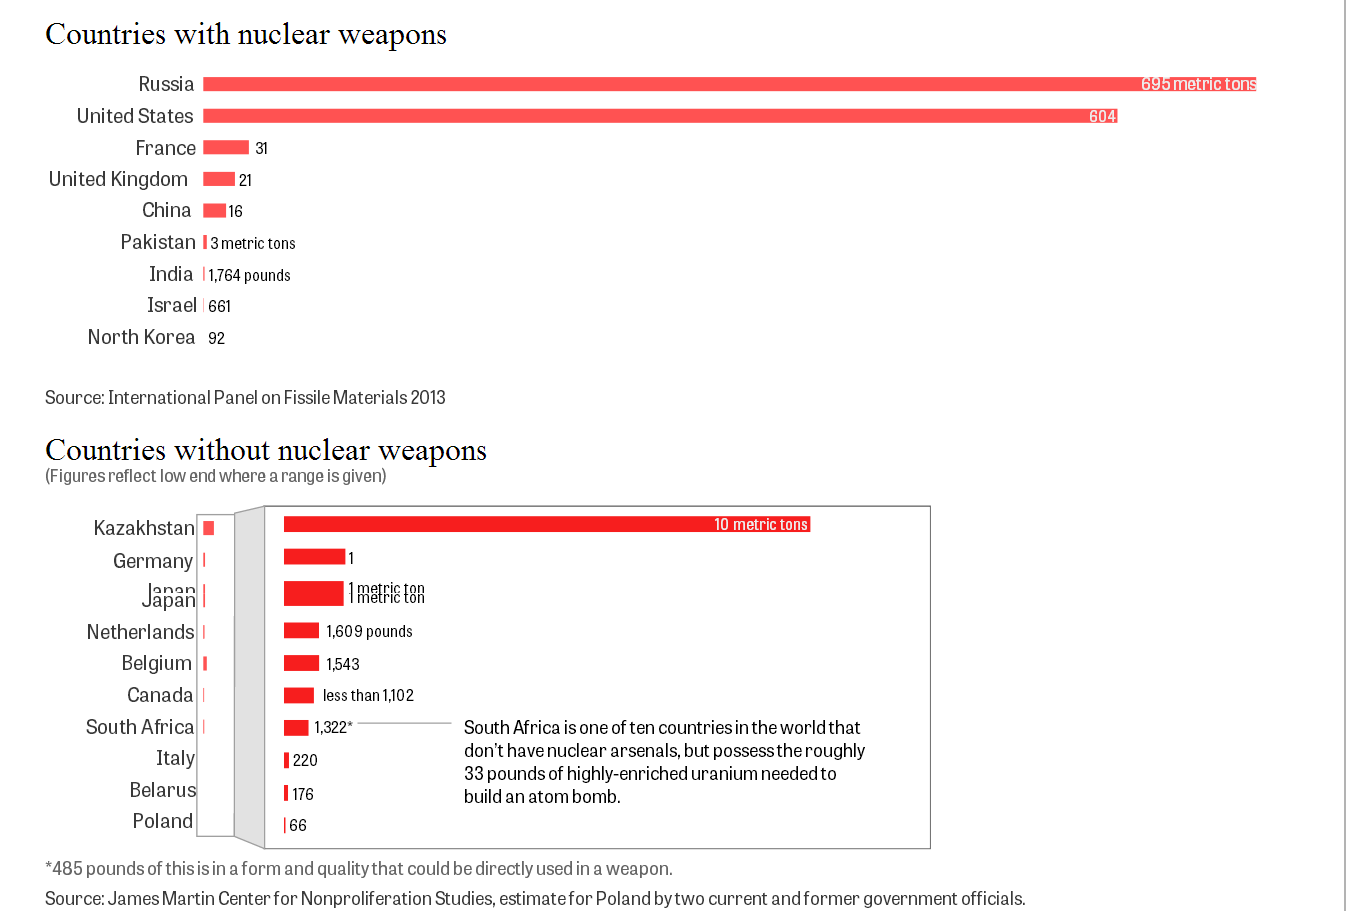 Global stocks of weapons uranium 